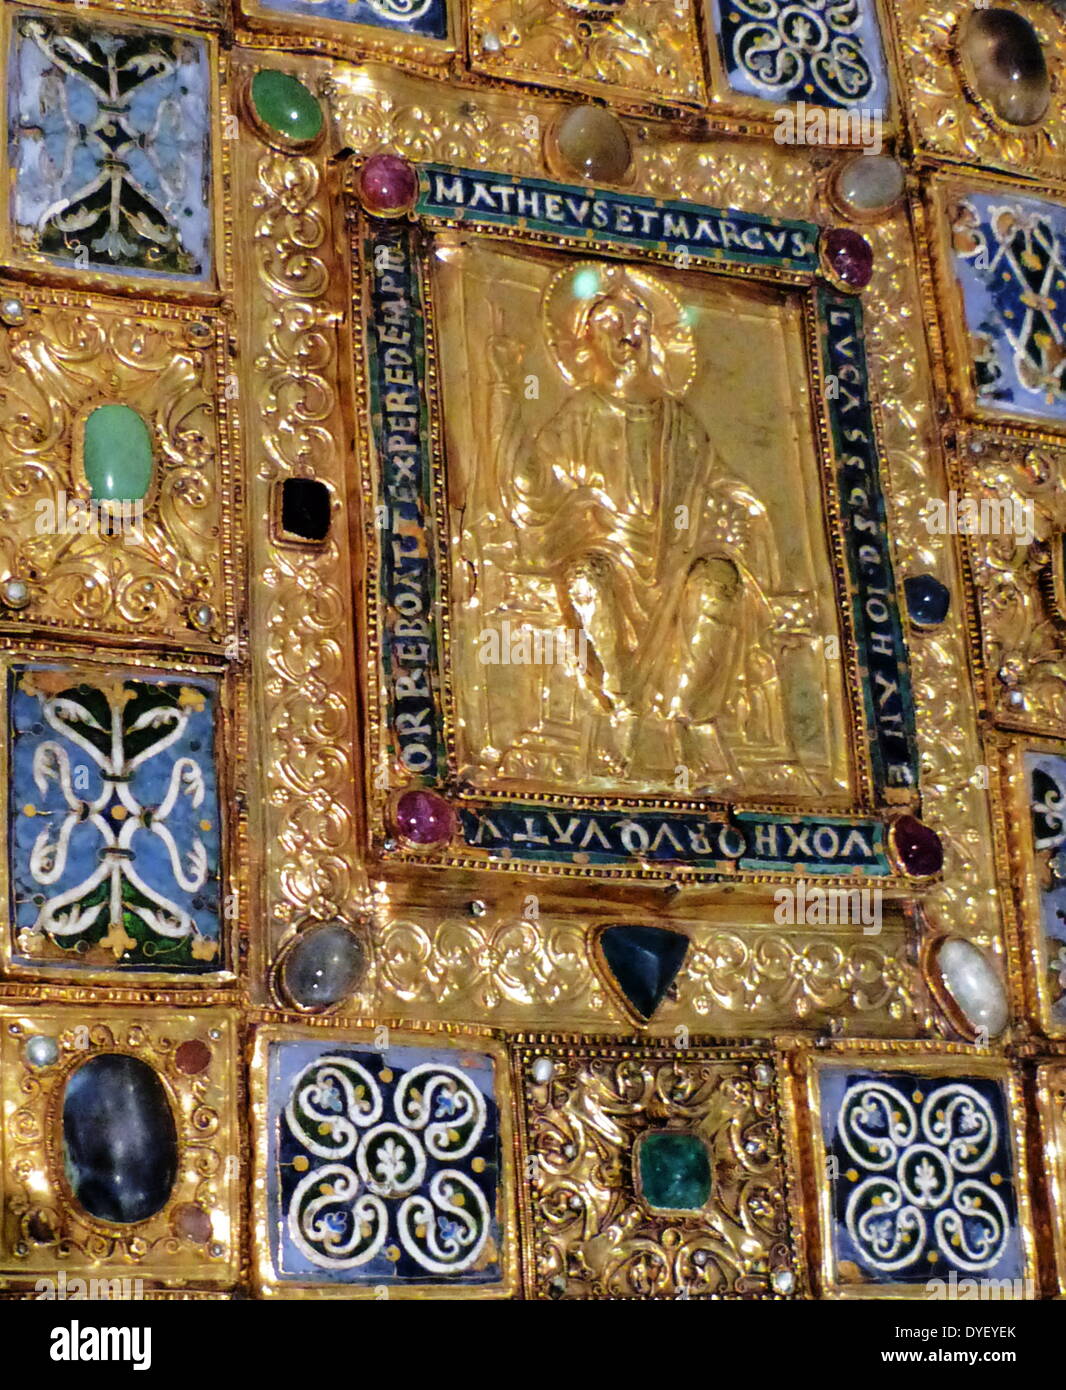 Bejewelled religiosi placca con immagine in rilievo e la scritta in latino. Foto Stock